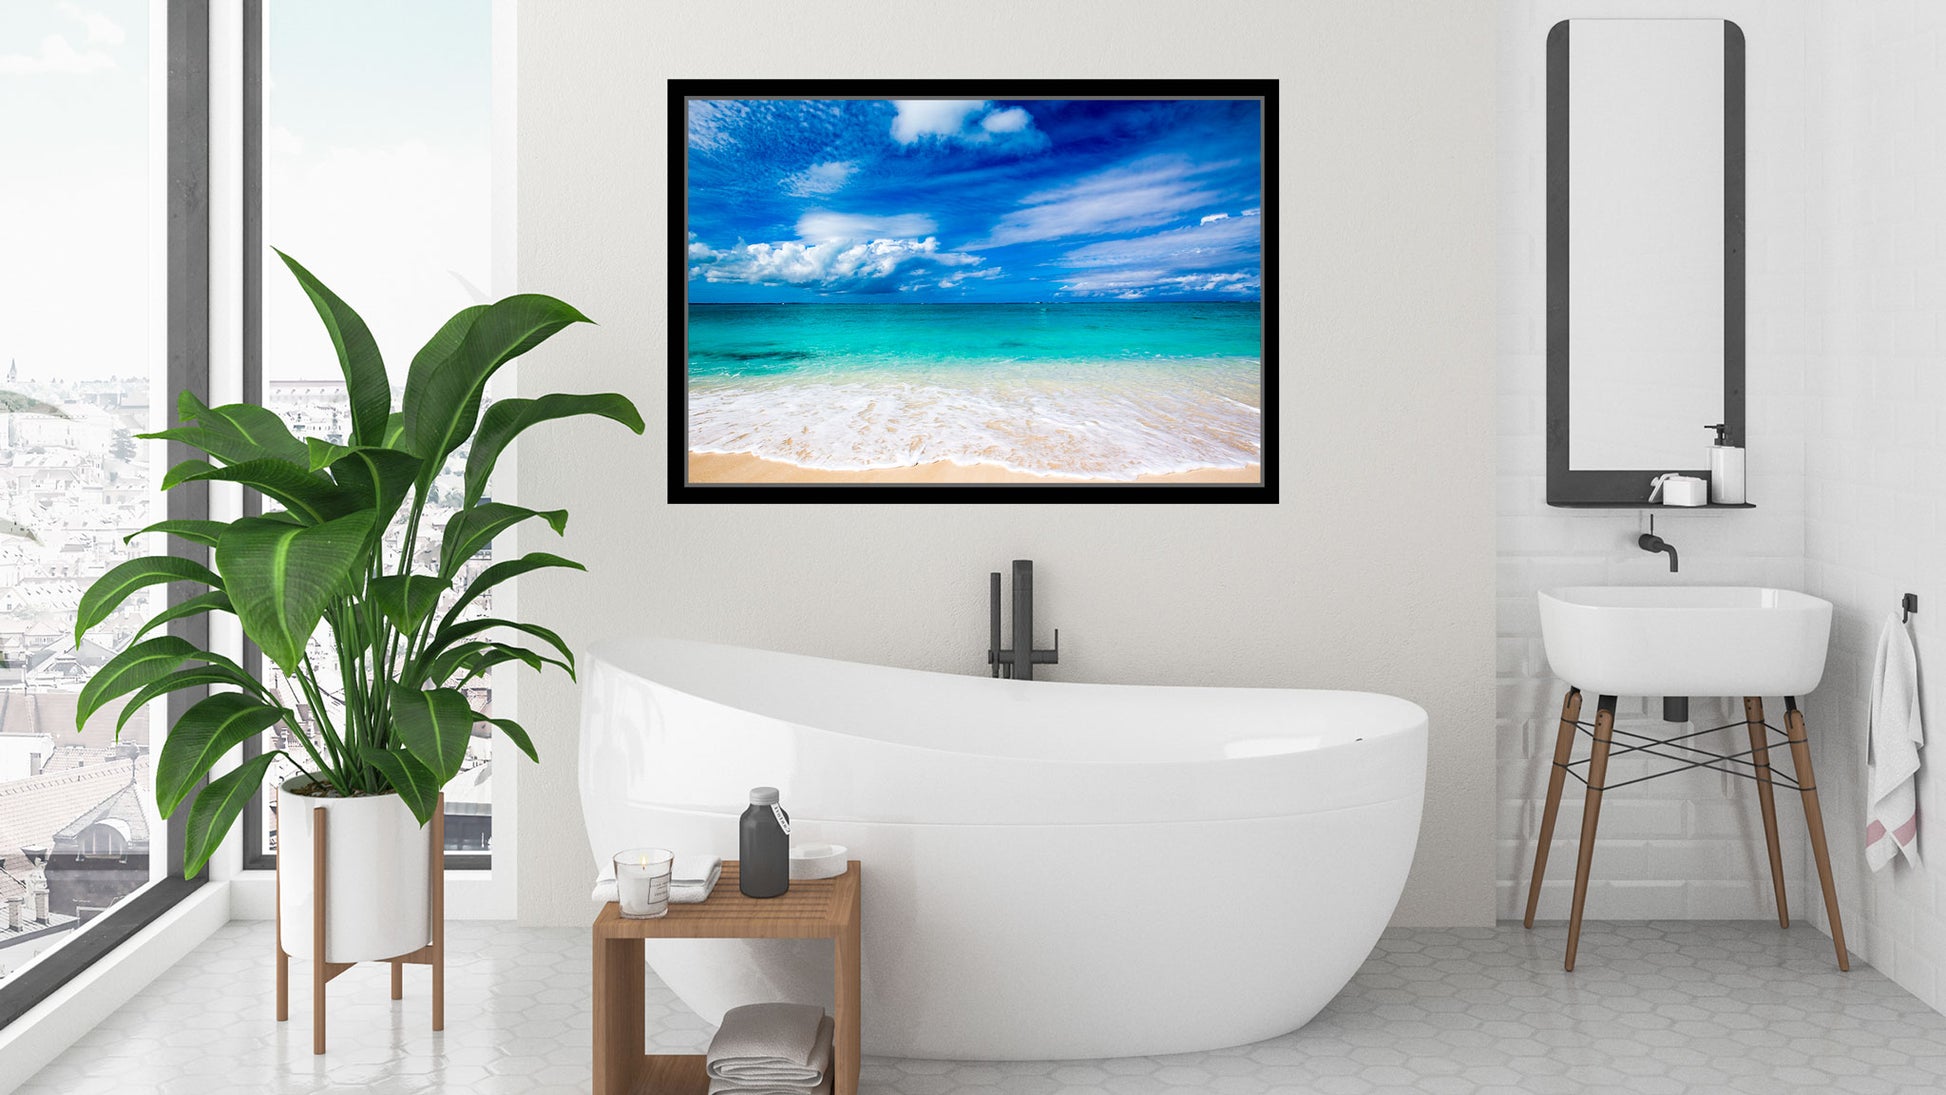 White Sand Beach - Canvas Print Framed on Bathroom Wall